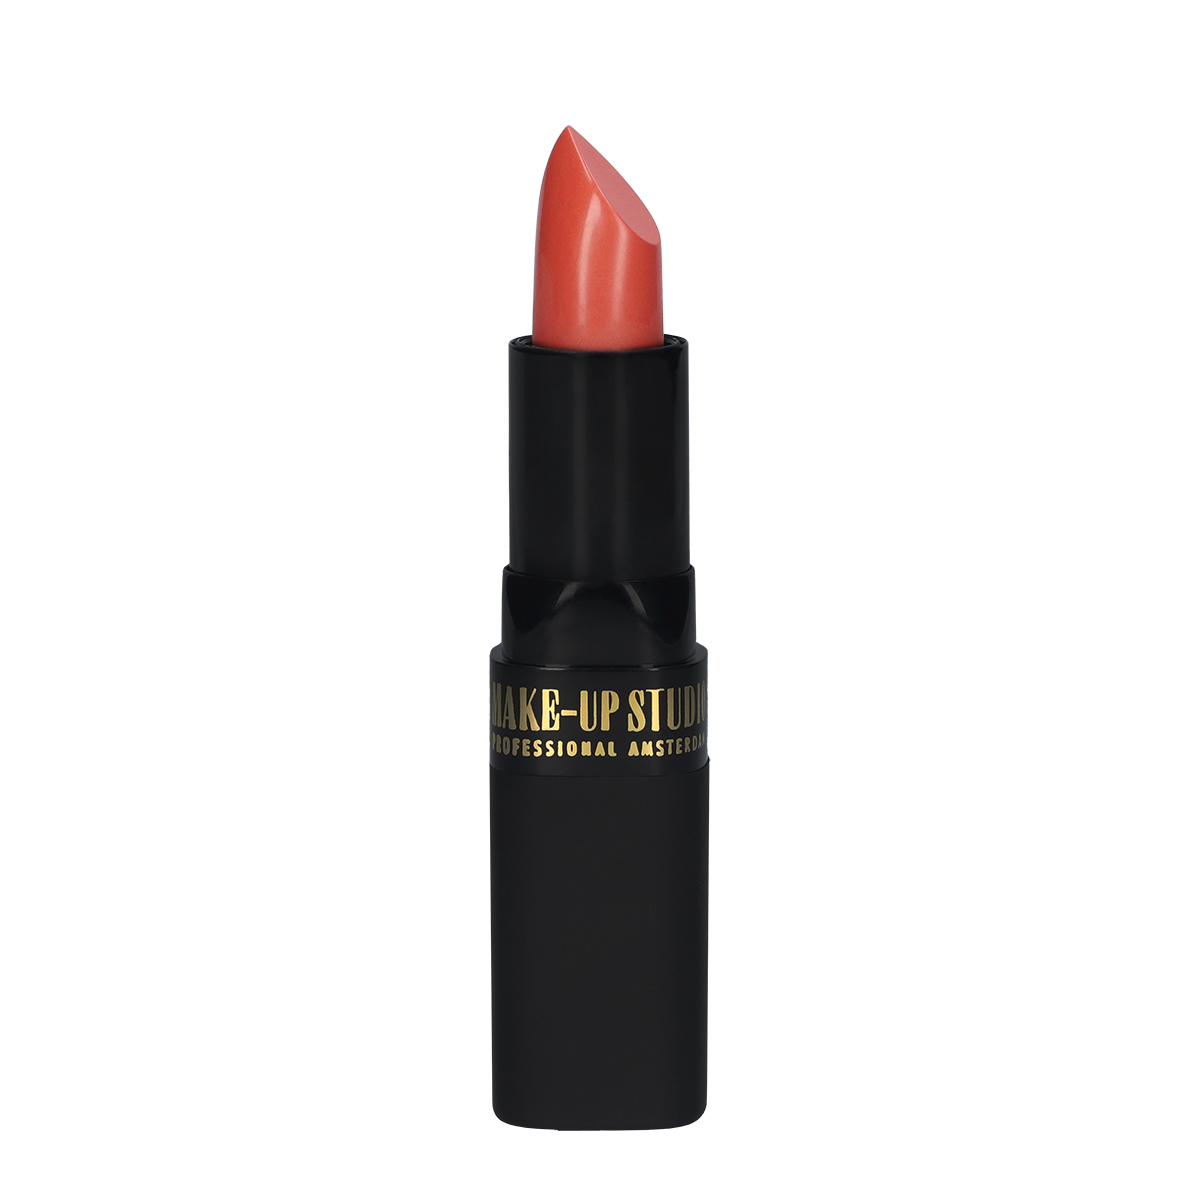 Make-up Studio Lipstick - 66